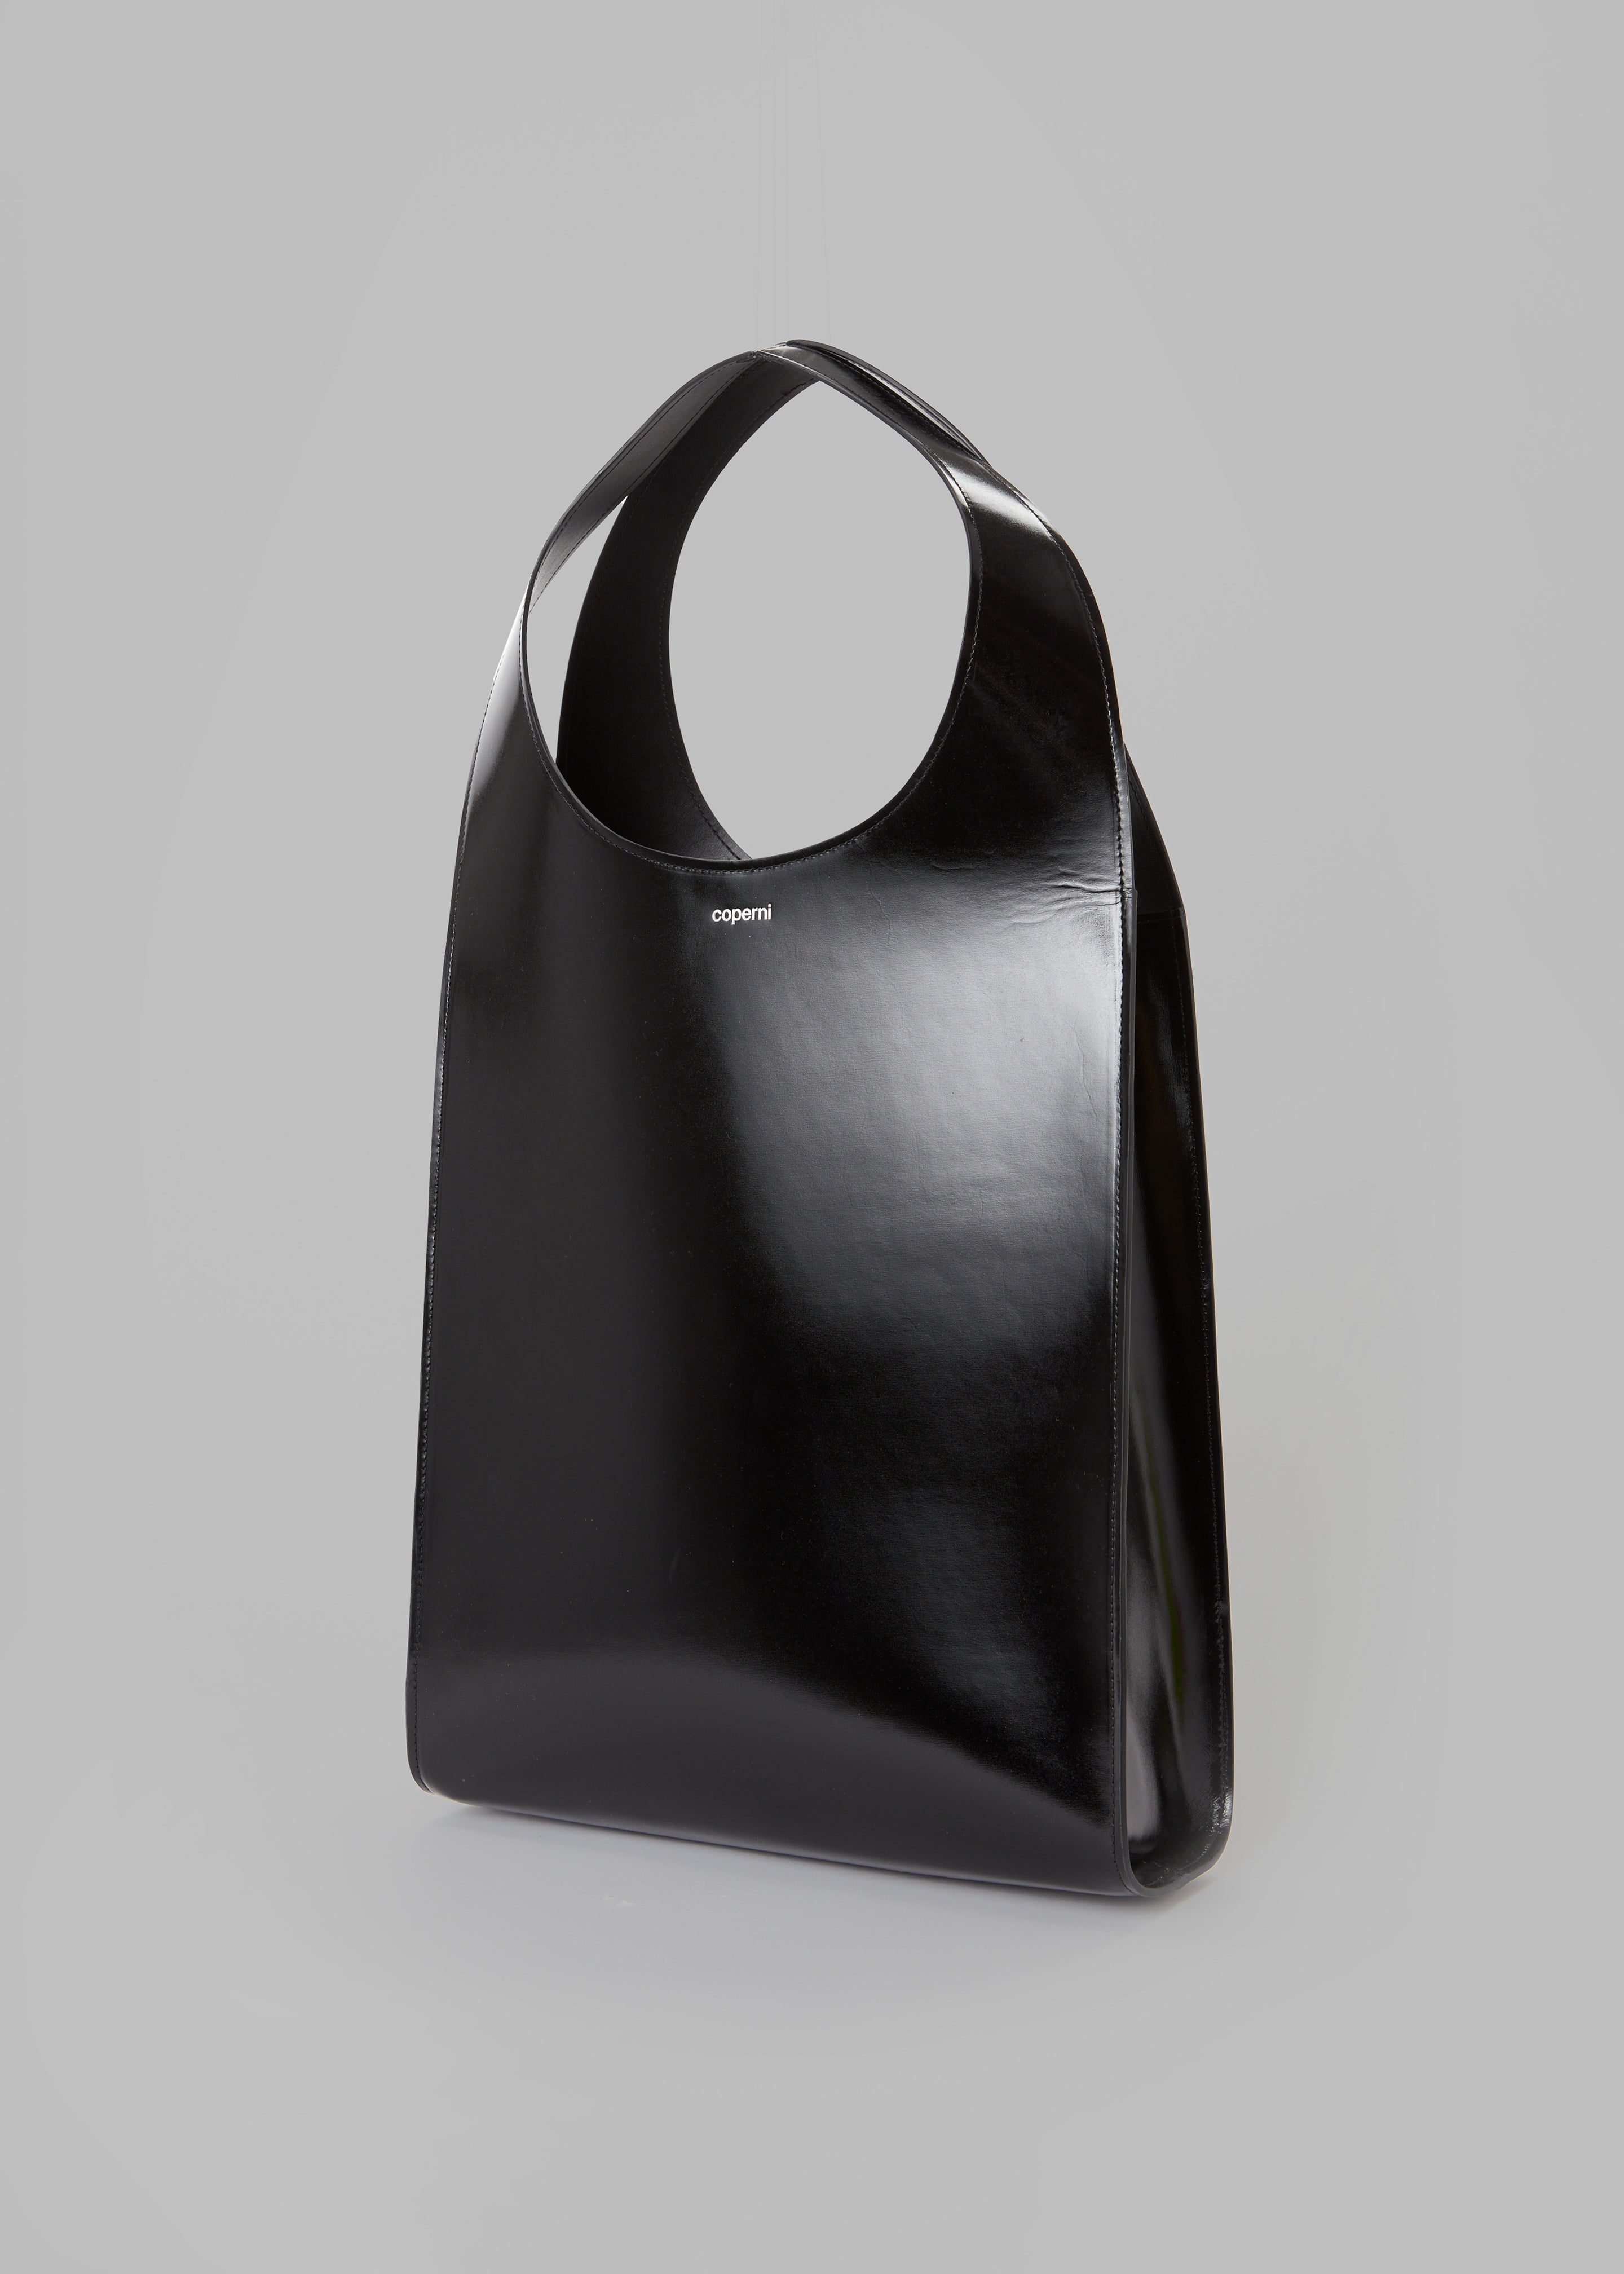 Coperni Swipe Tote Bag - Glossy Black - 1